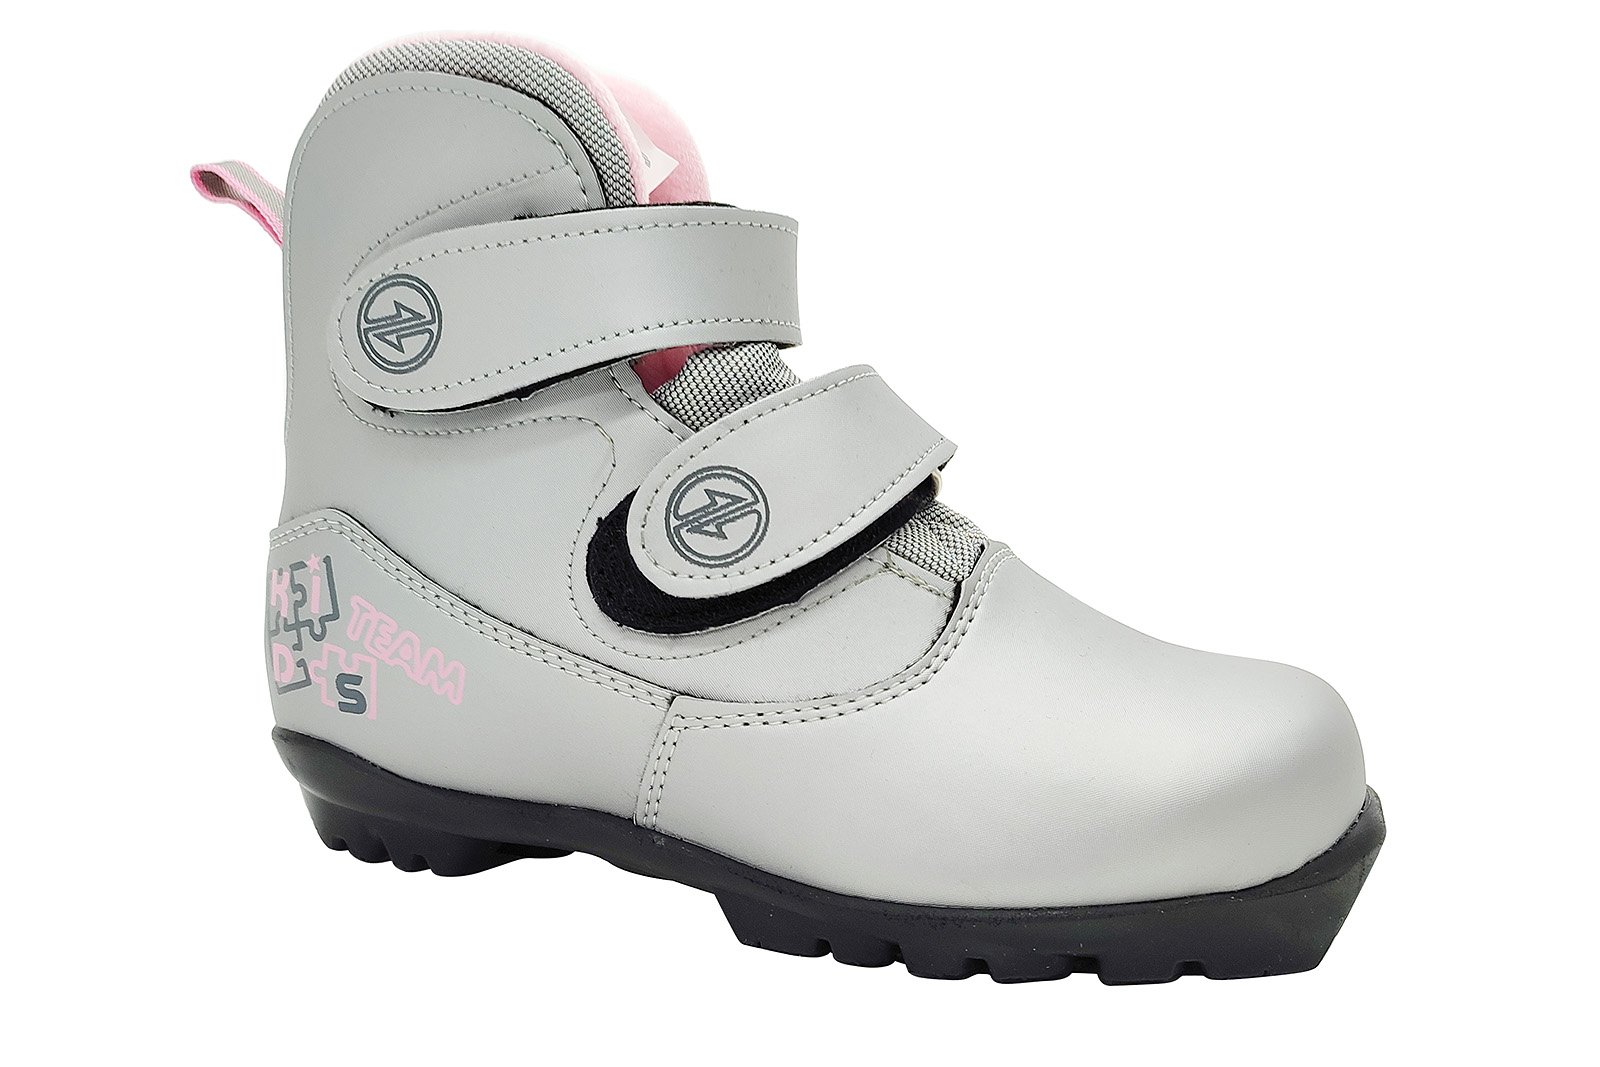 Ботинки лыжные NNN COMFORT Kids (системные!) (на липучке) серебро-розовый 1600_1067